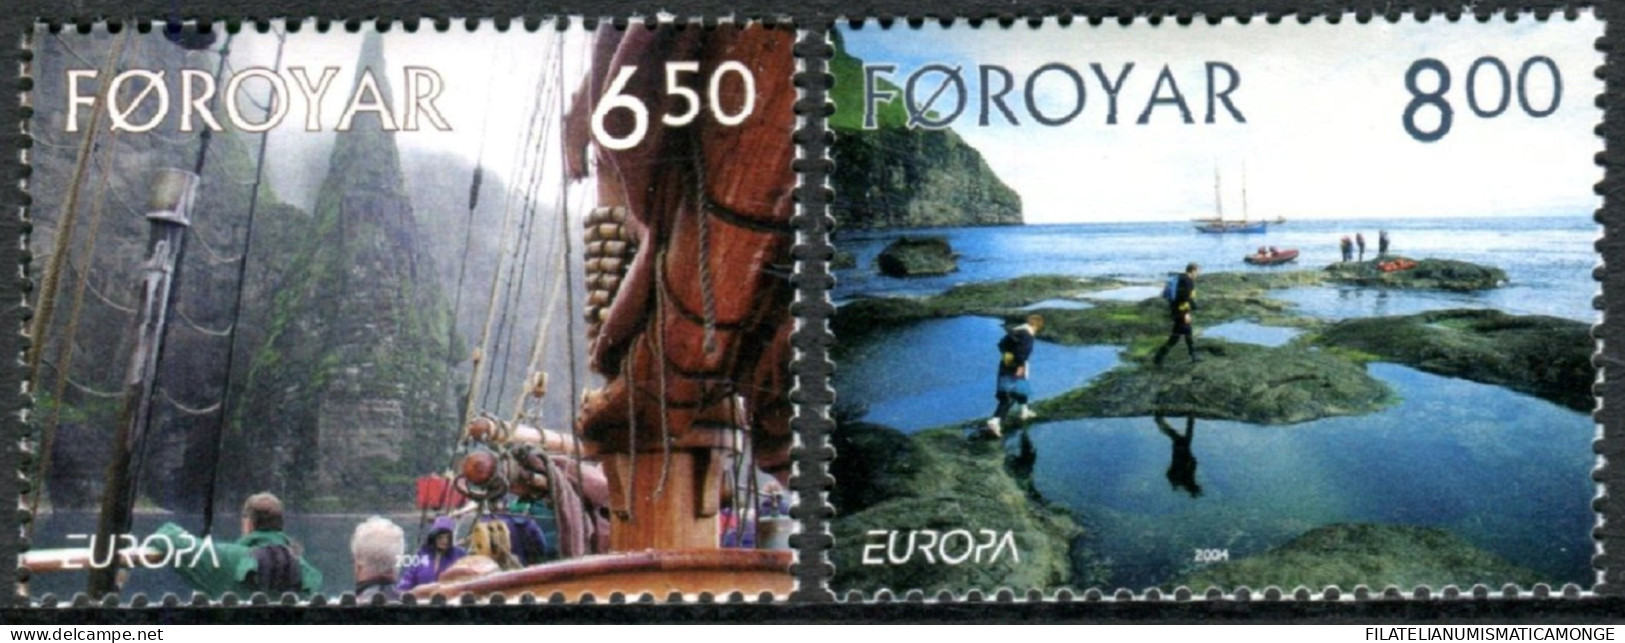  Tema Europa -    CEPT  Feroe 2004. Las Vacaciónes (2 Sellos) - Nº 493/494      - Faroe Islands